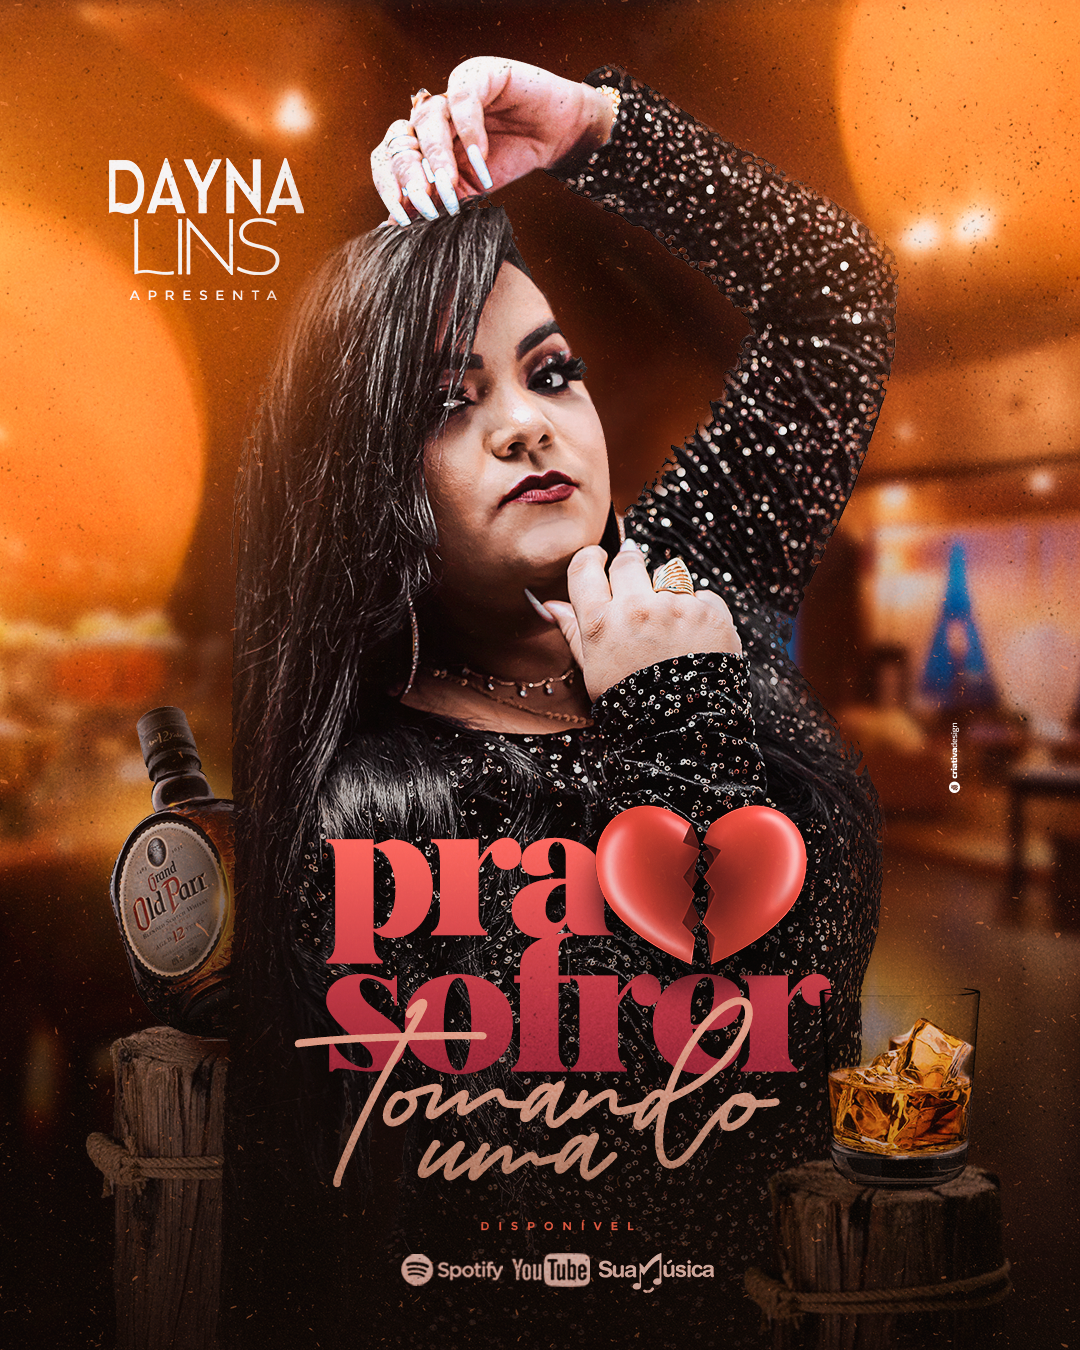 Em novo momento da carreira, Dayna Lins lança seu primeiro CD